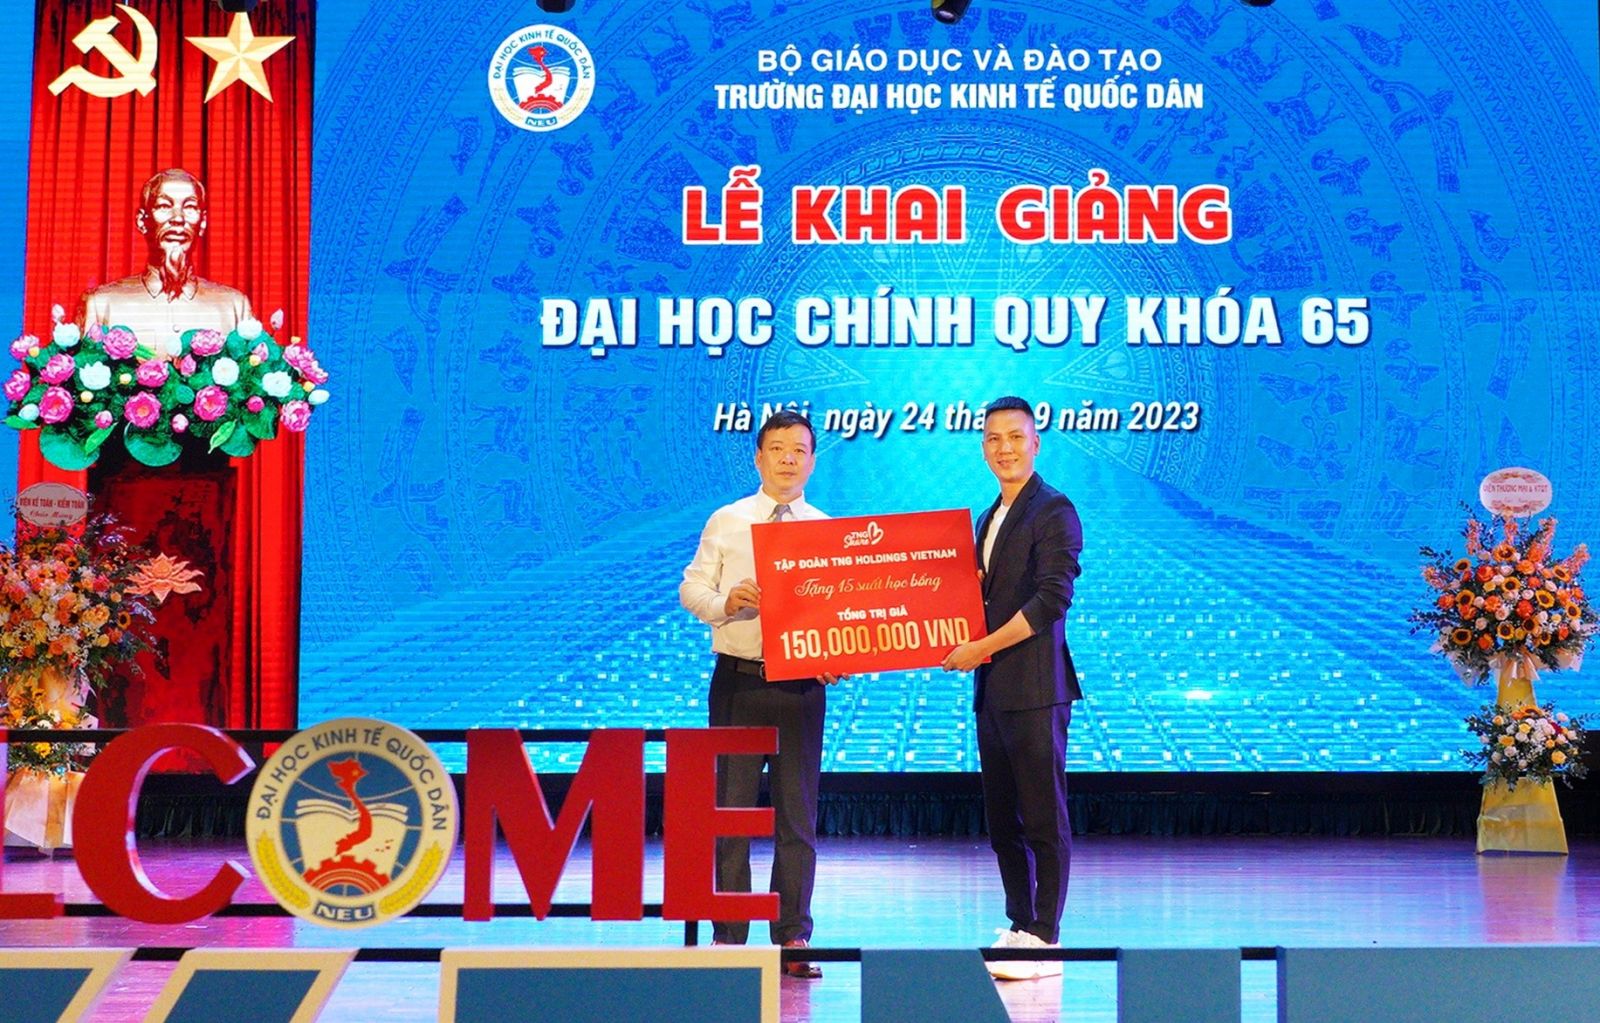 Tiếp sức cho những giấc mơ thay đổi cuộc đời của các sinh viên có hoàn cảnh đặc biệt khó khăn, TNG Holdings Vietnam đã trao tặng 15 suất học bổng TNG Share, mỗi suất 10 triệu đồng cho các tân sinh viên đại học Kinh tế Quốc dân. Học bổng được trao ngay tại Lễ Khai giảng năm học mới 2023-2024.